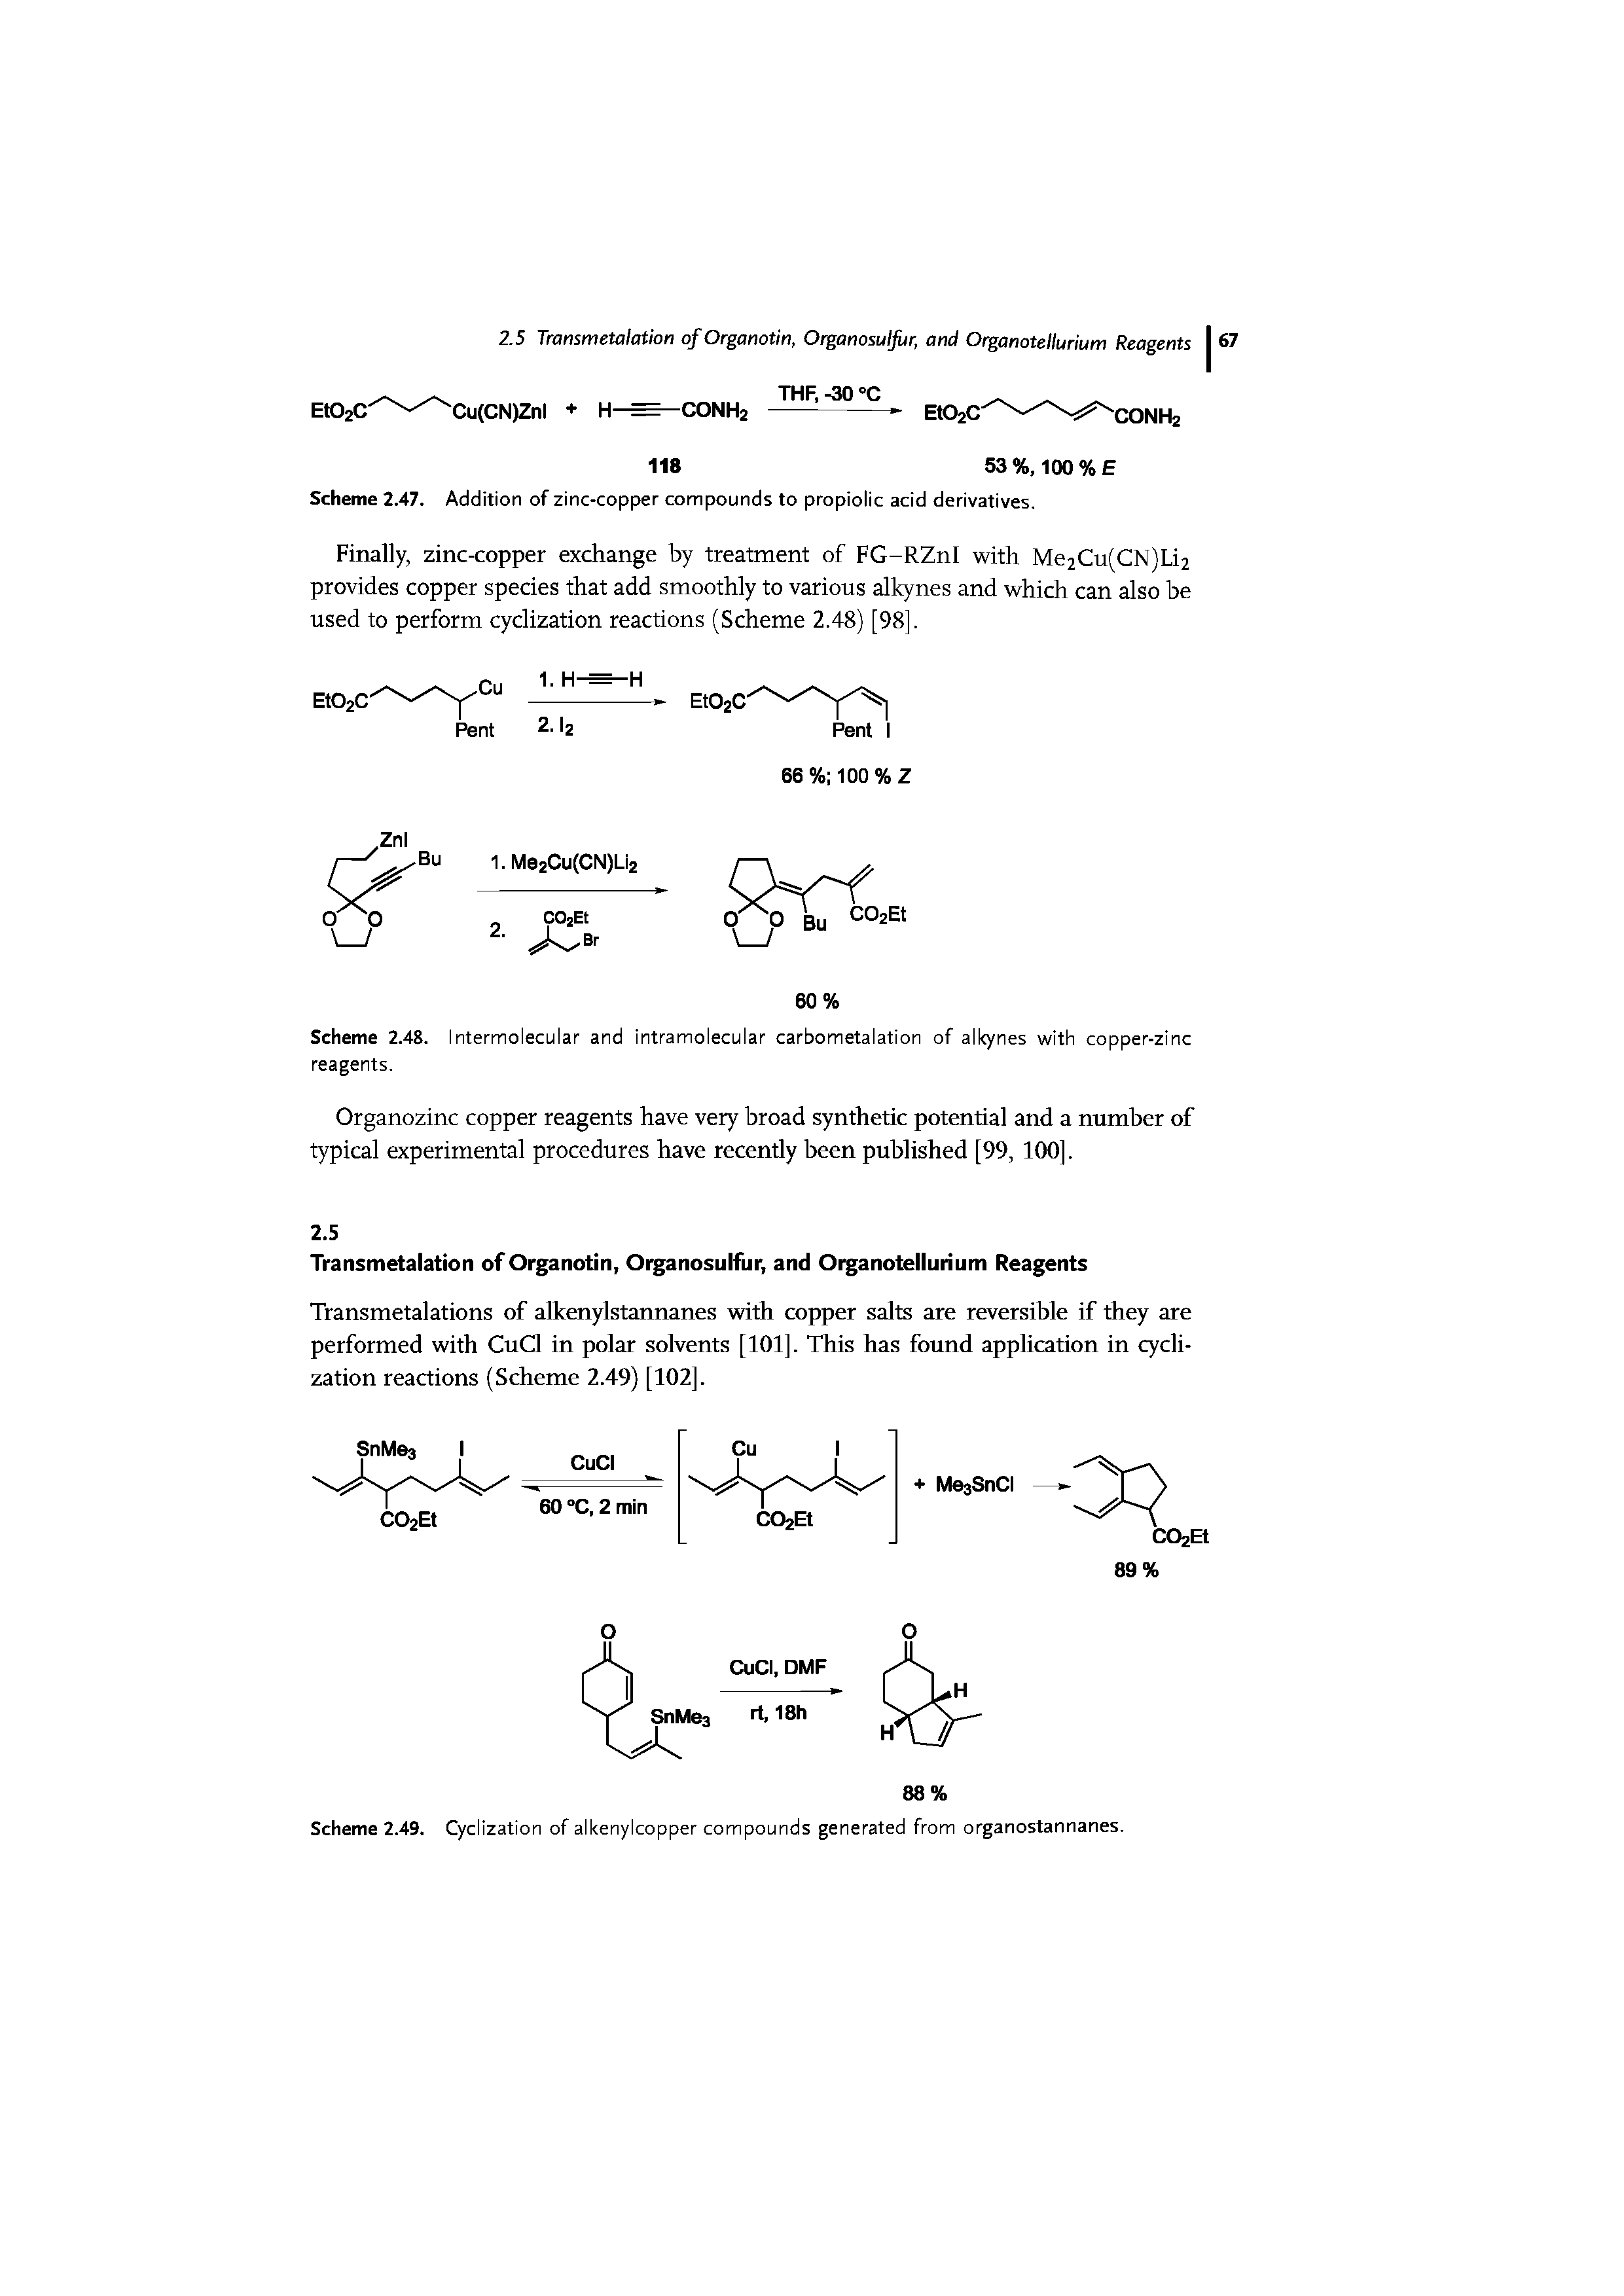 Scheme 2.47. Addition of zinc-copper compounds to propiolic acid derivatives.